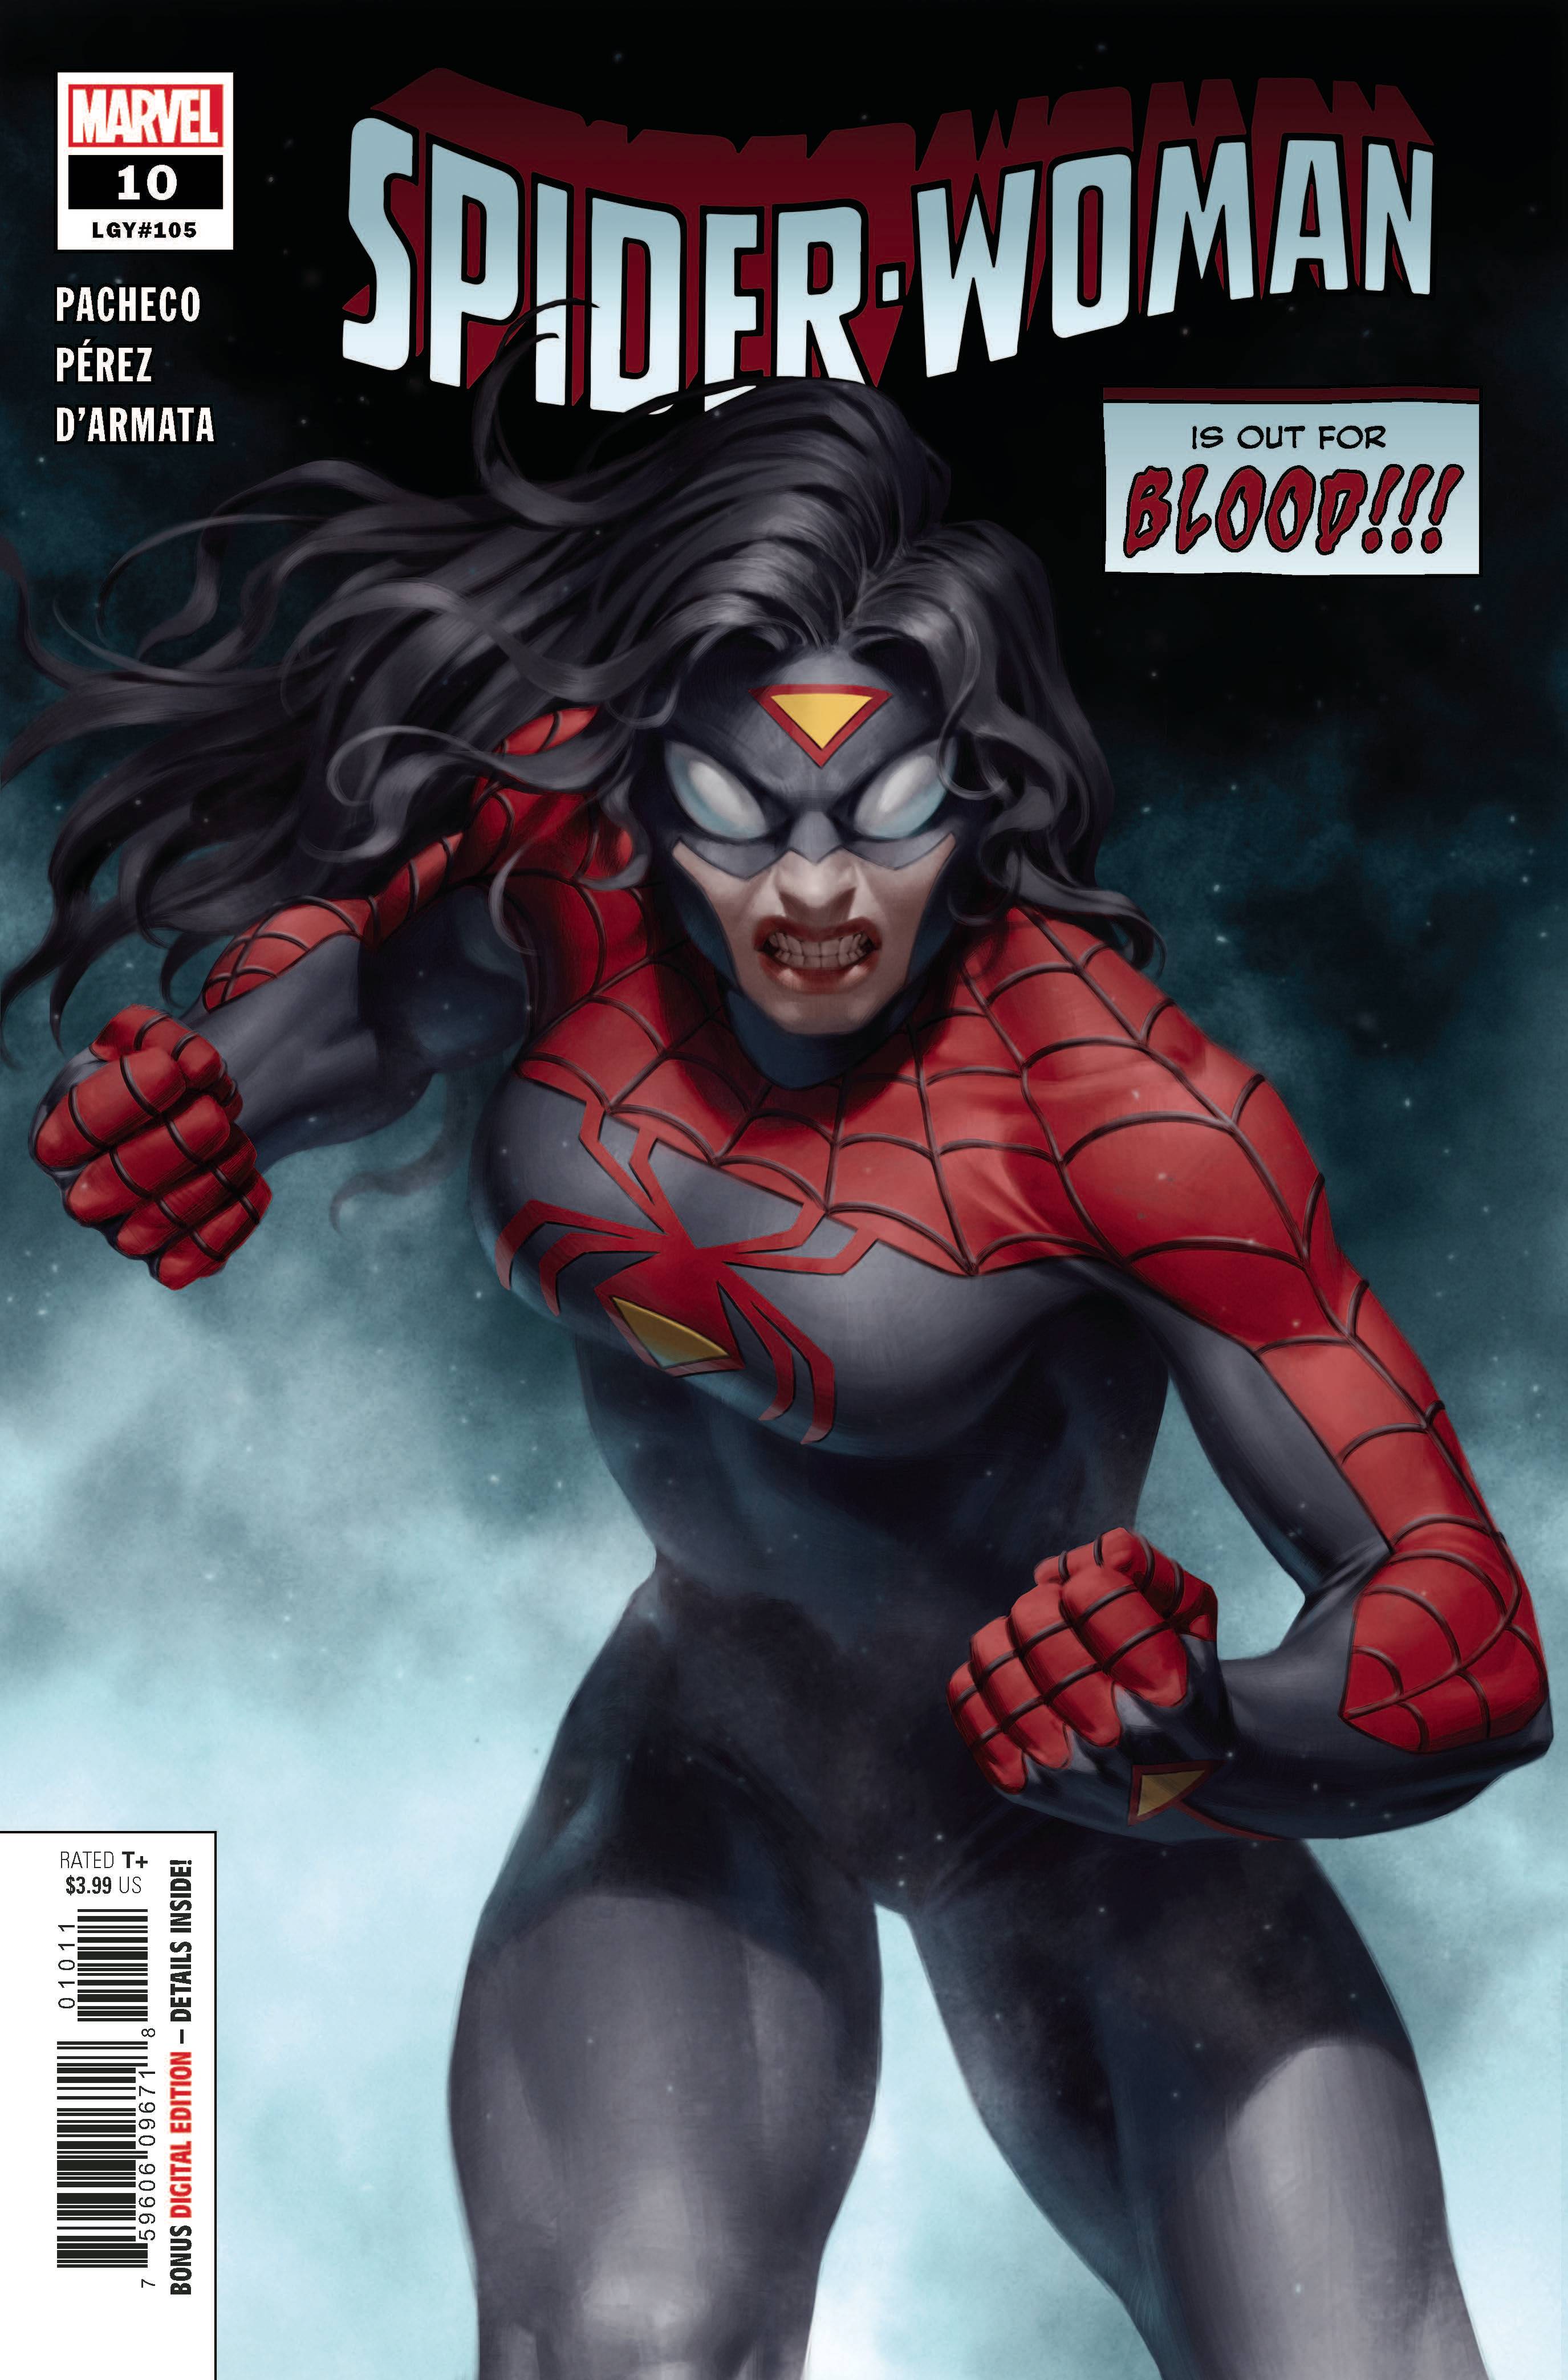 SPIDER-WOMAN #10 | L.A. Mood Comics and Games